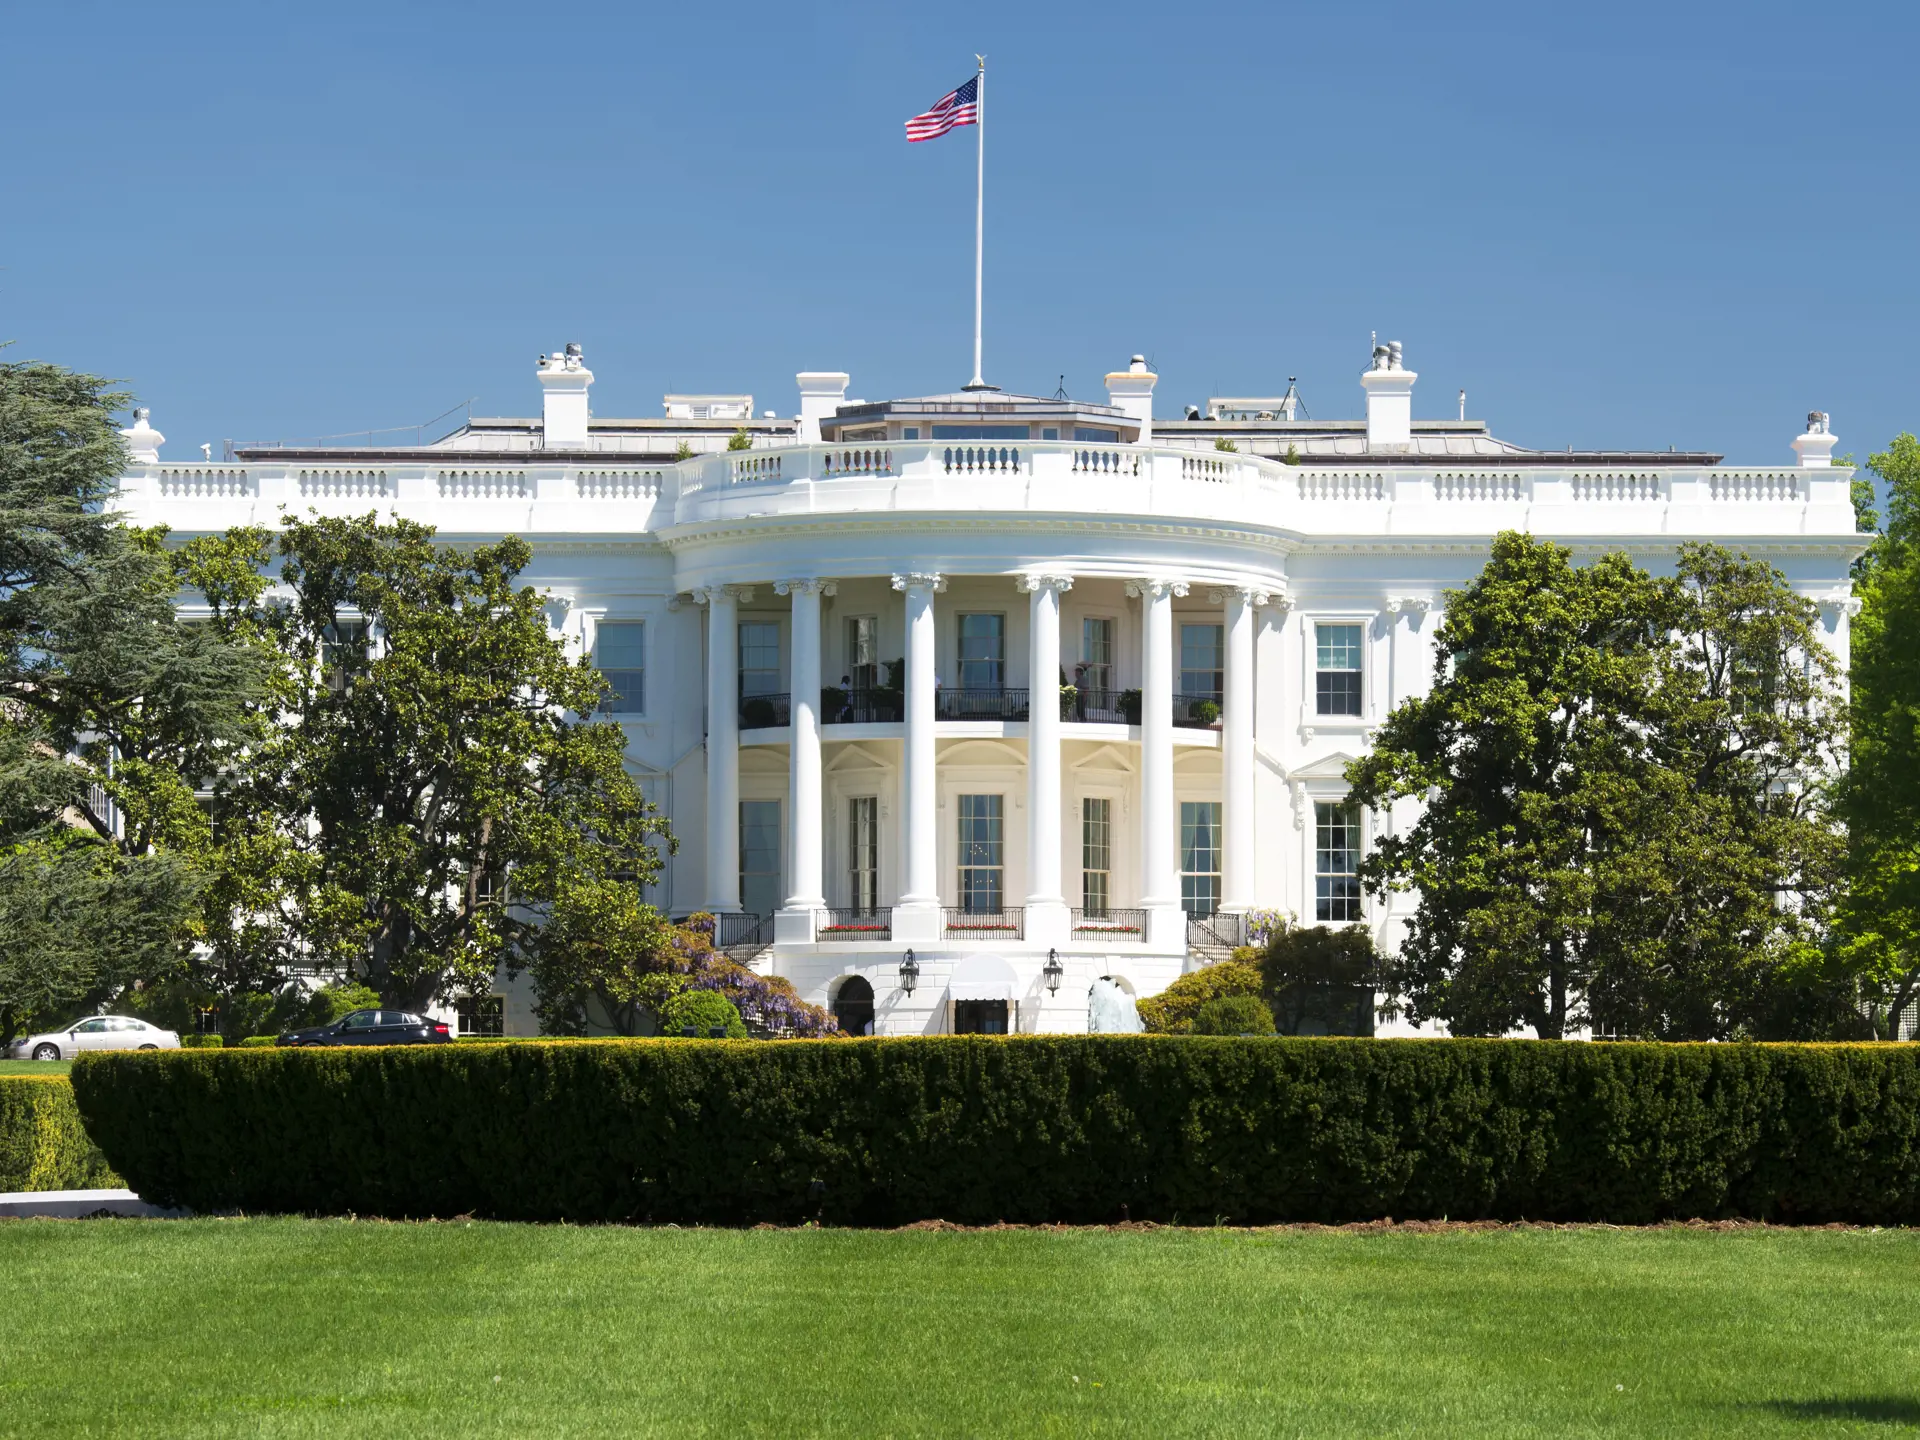 WASHINGTON - Det Hvide Hus er bopæl for den siddende amerikanske præsident og en af Verdens mest kendte bygninger, Check Point Travel